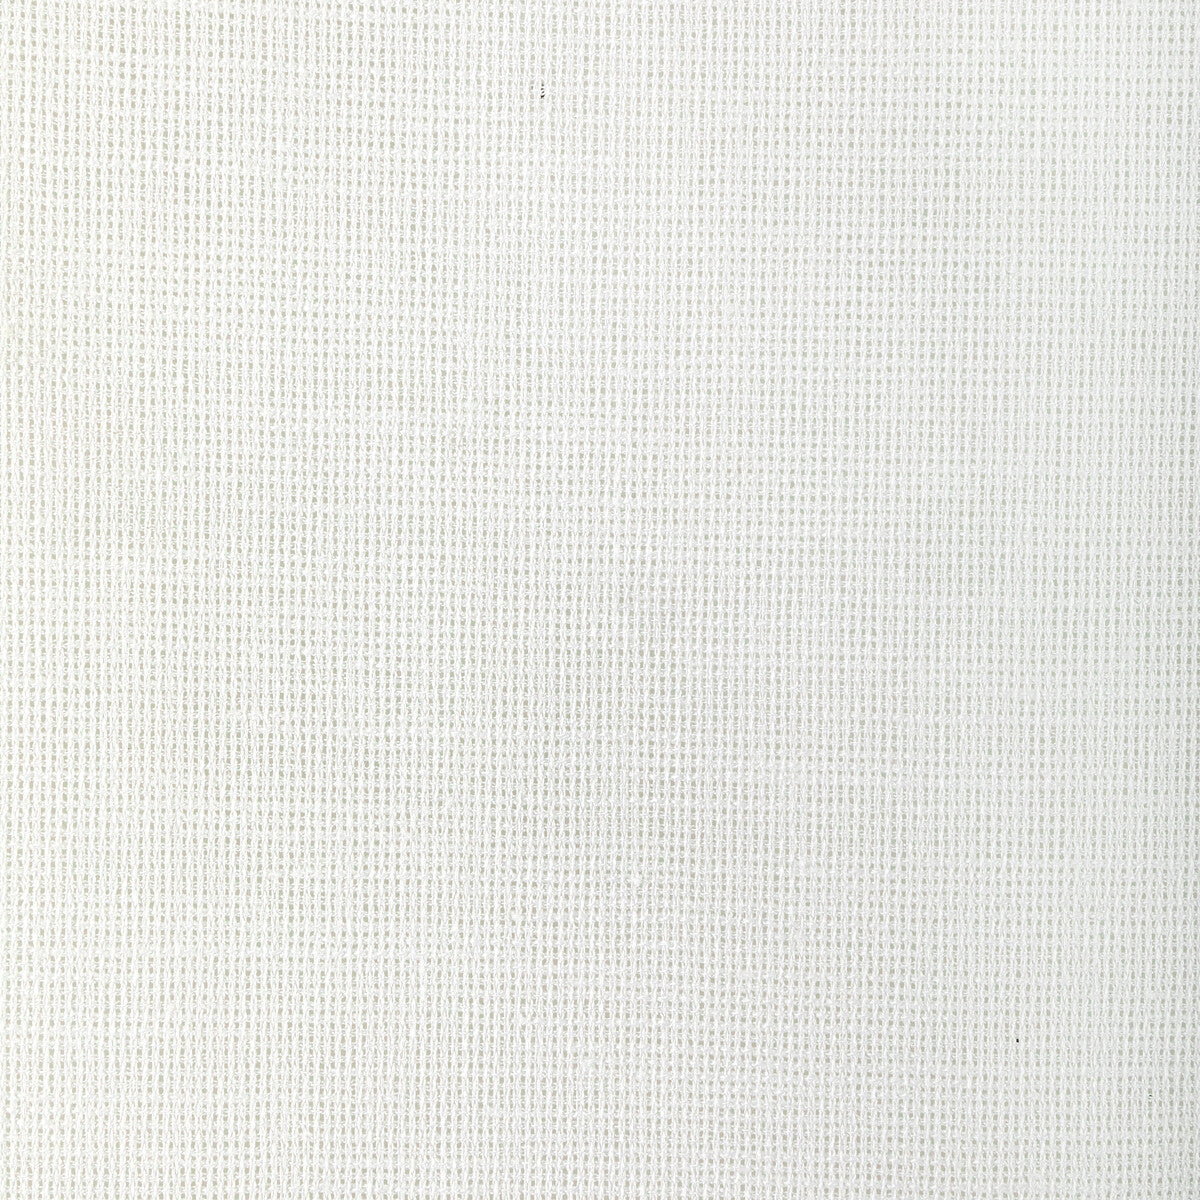 Kravet Basics fabric in 4942-1 color - pattern 4942.1.0 - by Kravet Basics